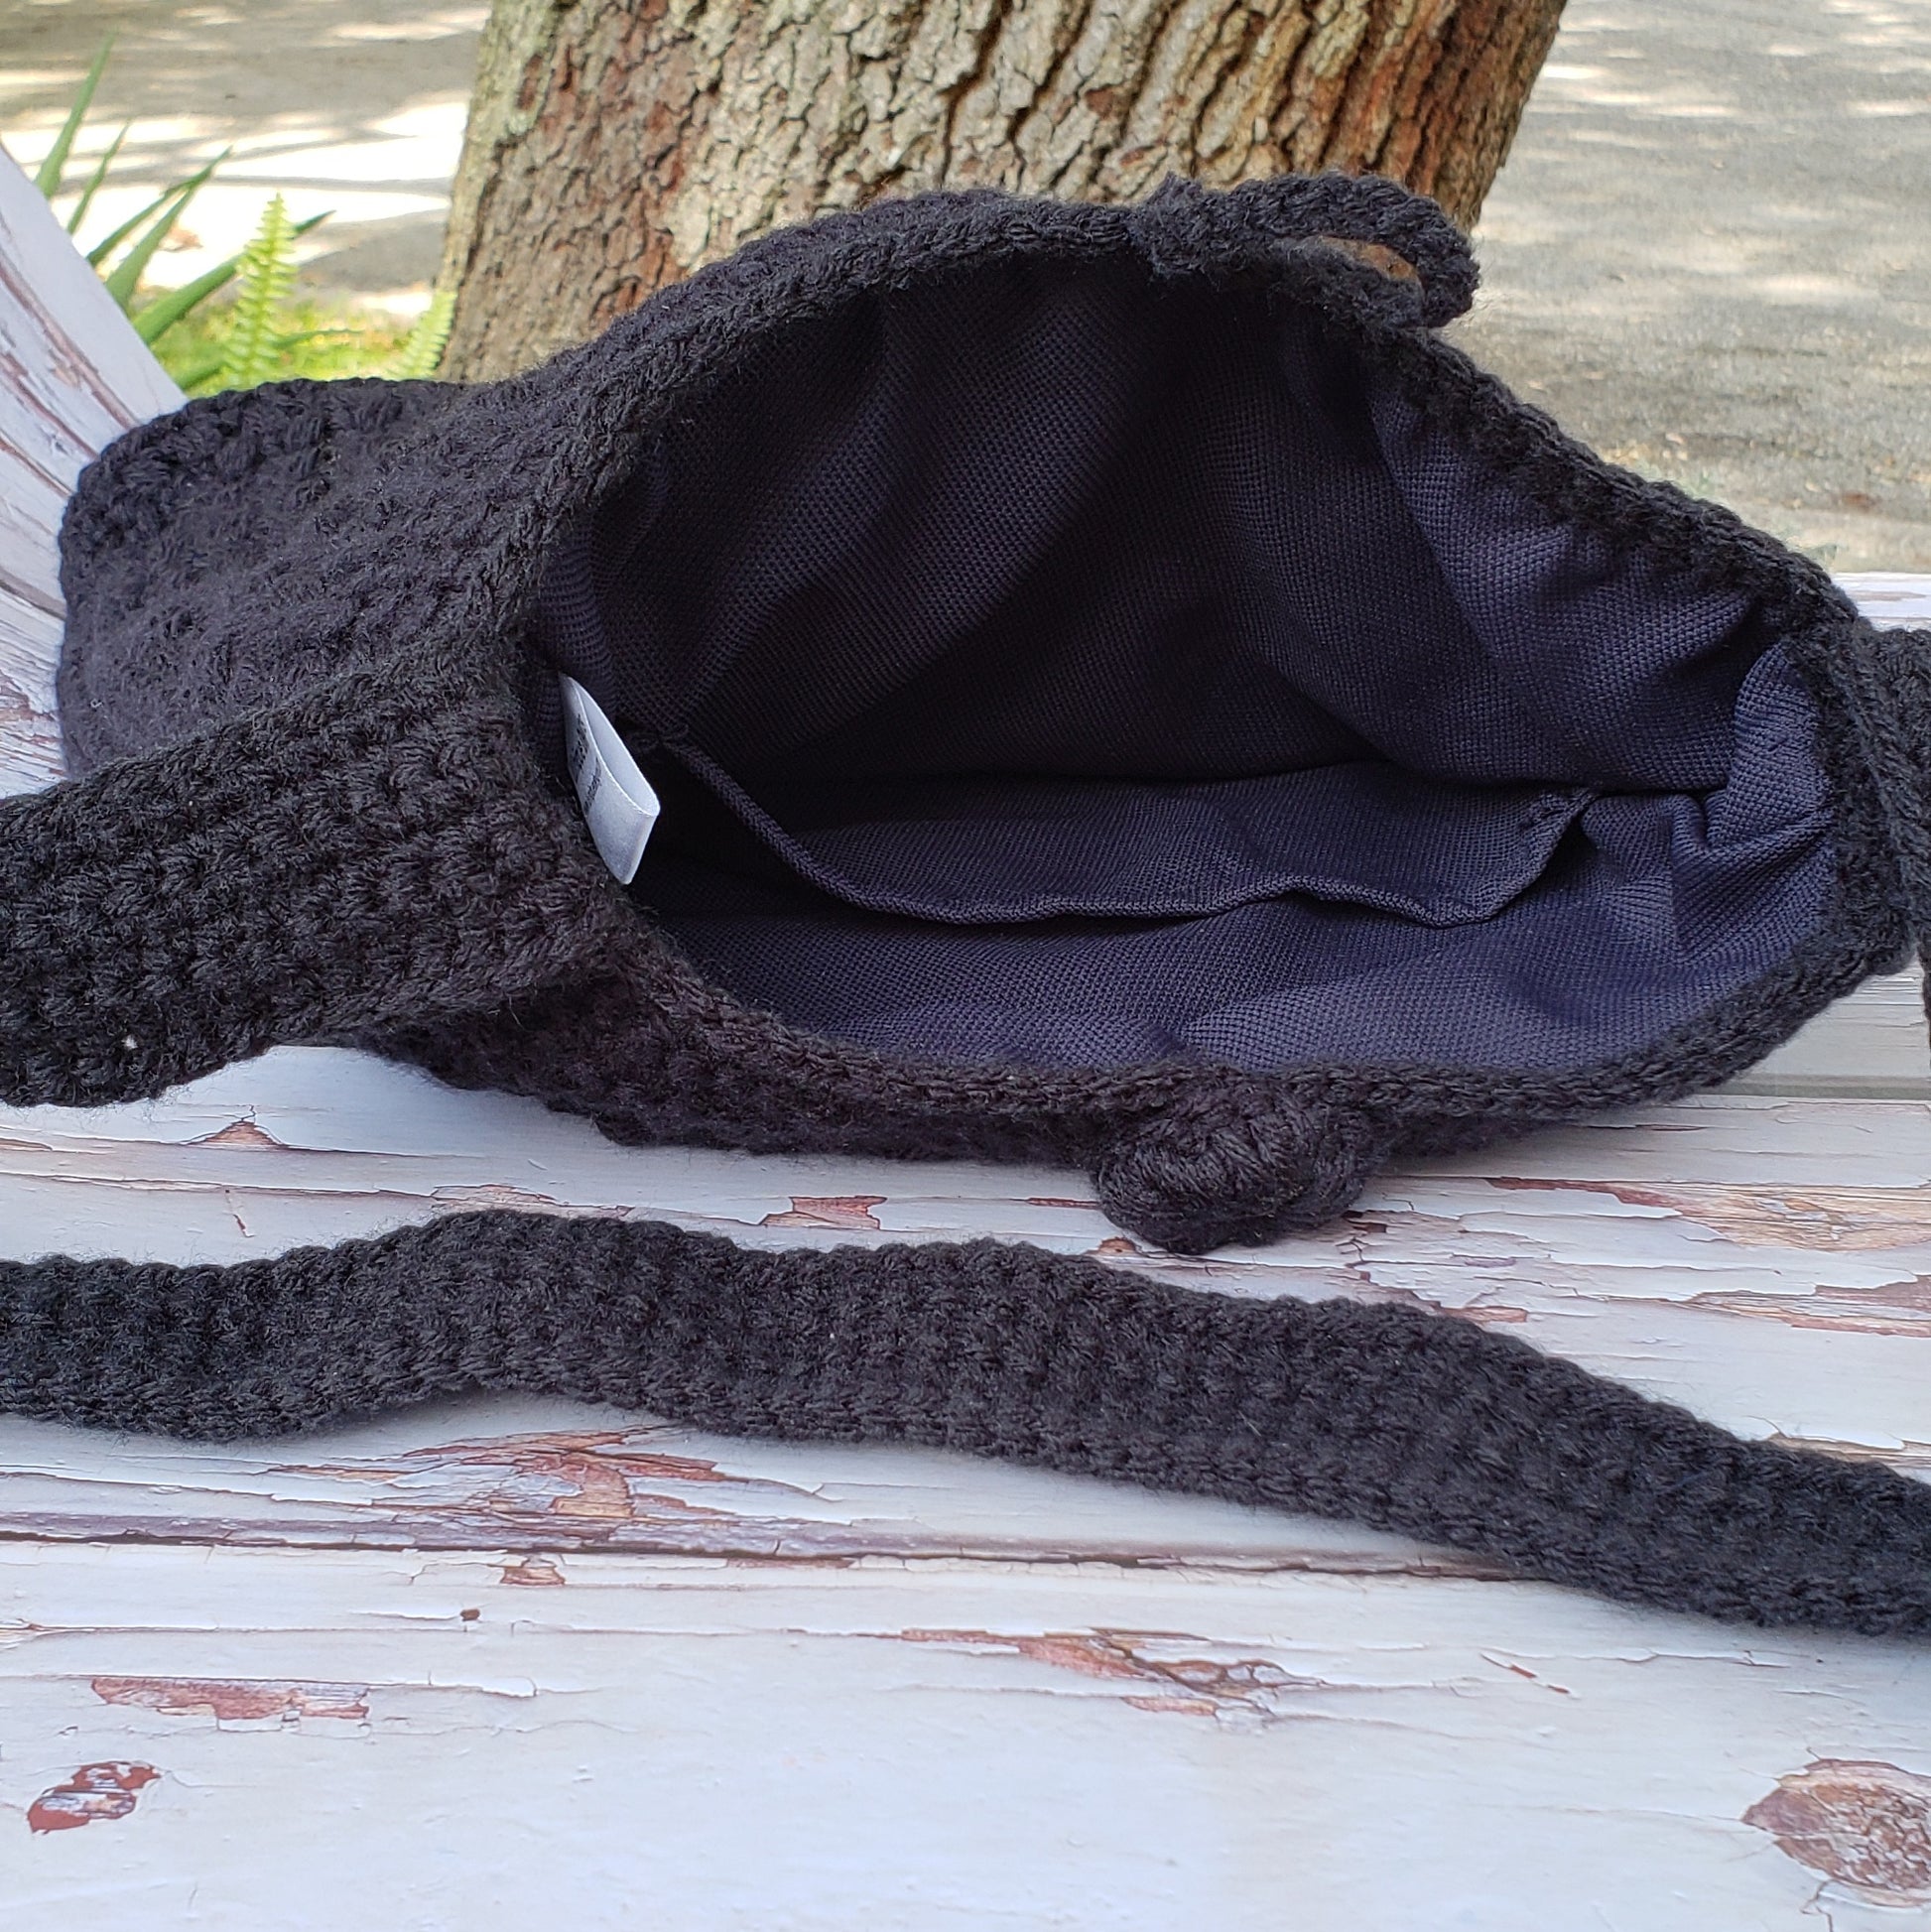 crochet black bag